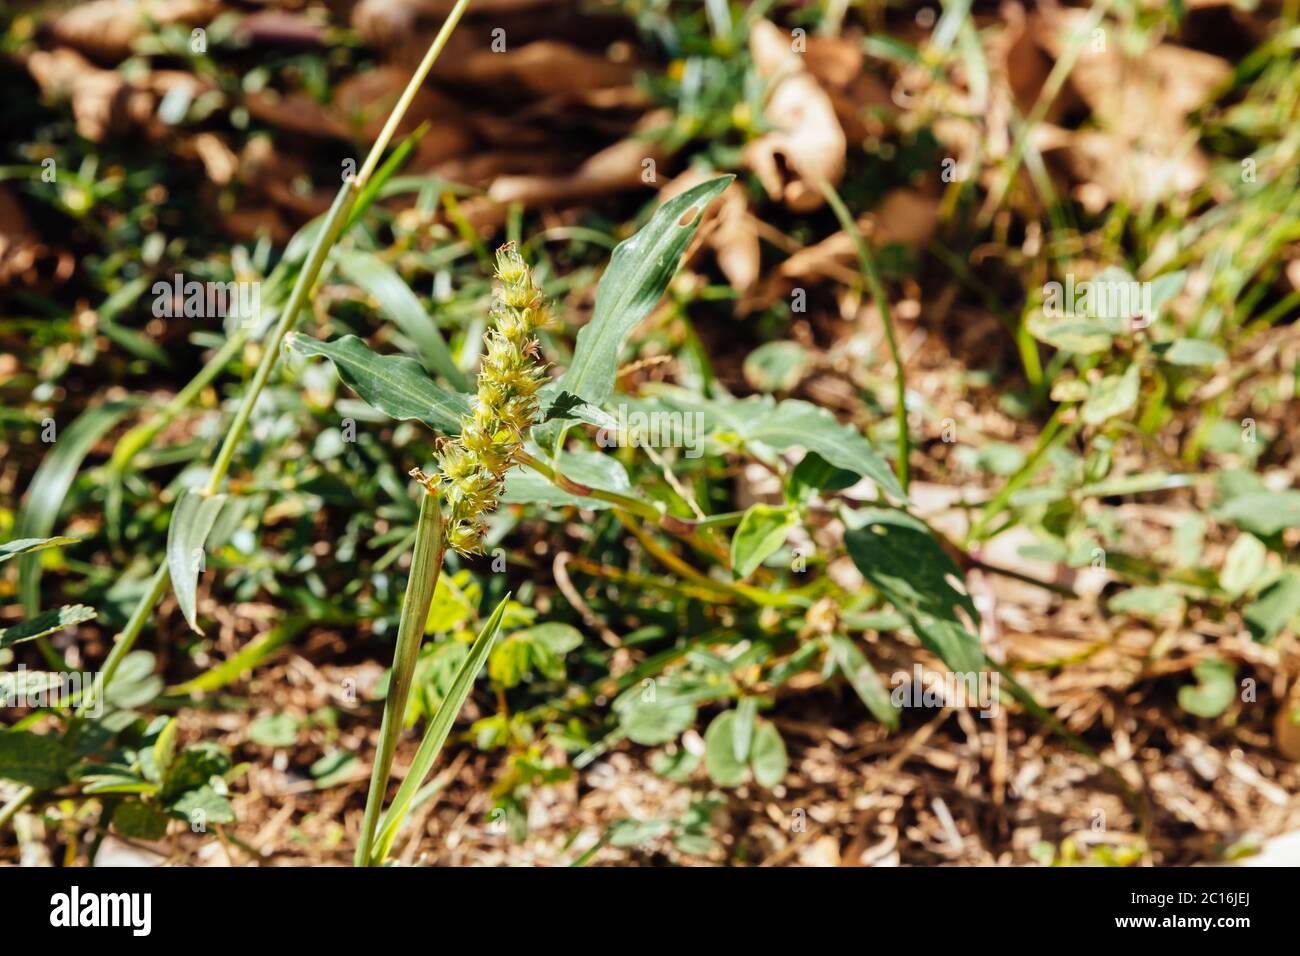 Southern sandbur (Cenchrus echinatus), aka spiny sandbur, southern sandspur and bur grass grows in a backyard, Asuncion, Paraguay Stock Photo